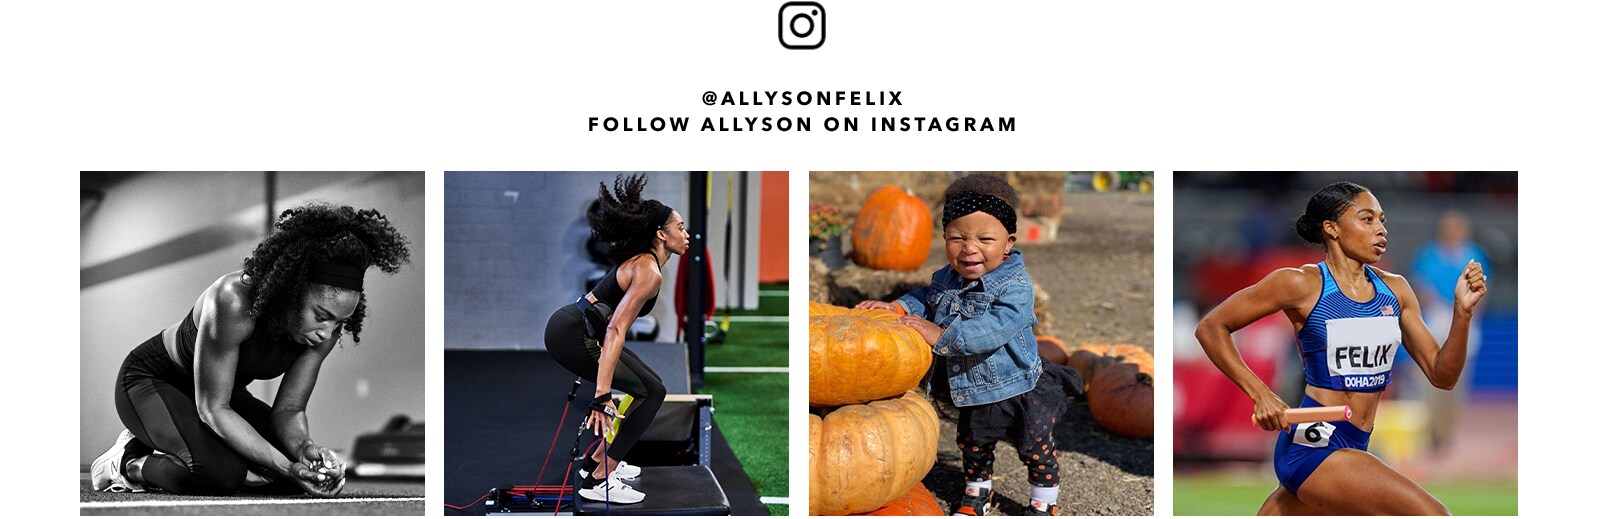 follow allyson on instagram @allysonfelix